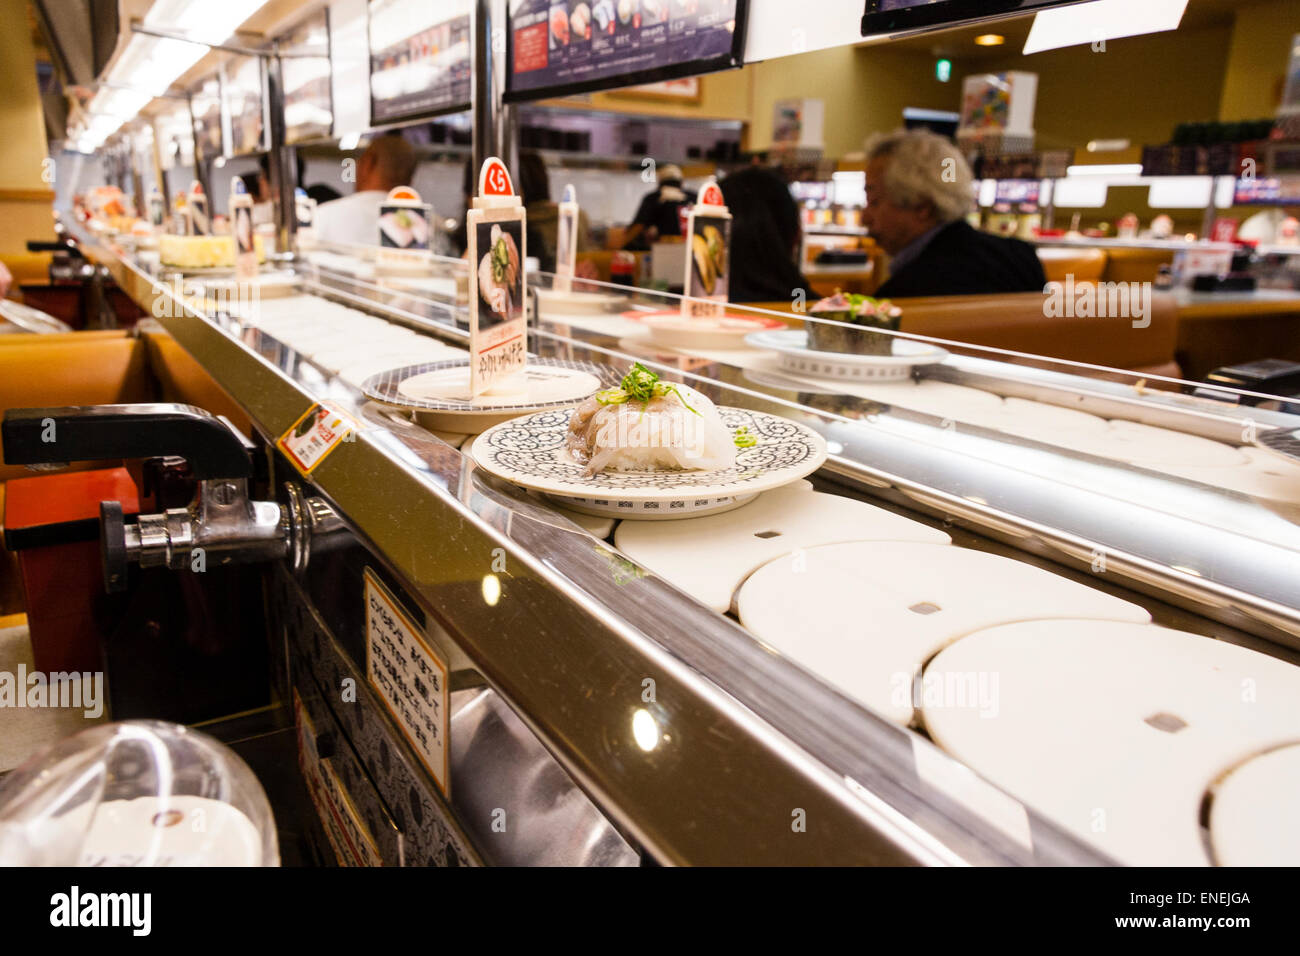 Intérieur d'un restaurant de sushis japonais typique. Gros plan de divers  sushis et aliments sur des assiettes se déplaçant le long du tapis roulant  Photo Stock - Alamy